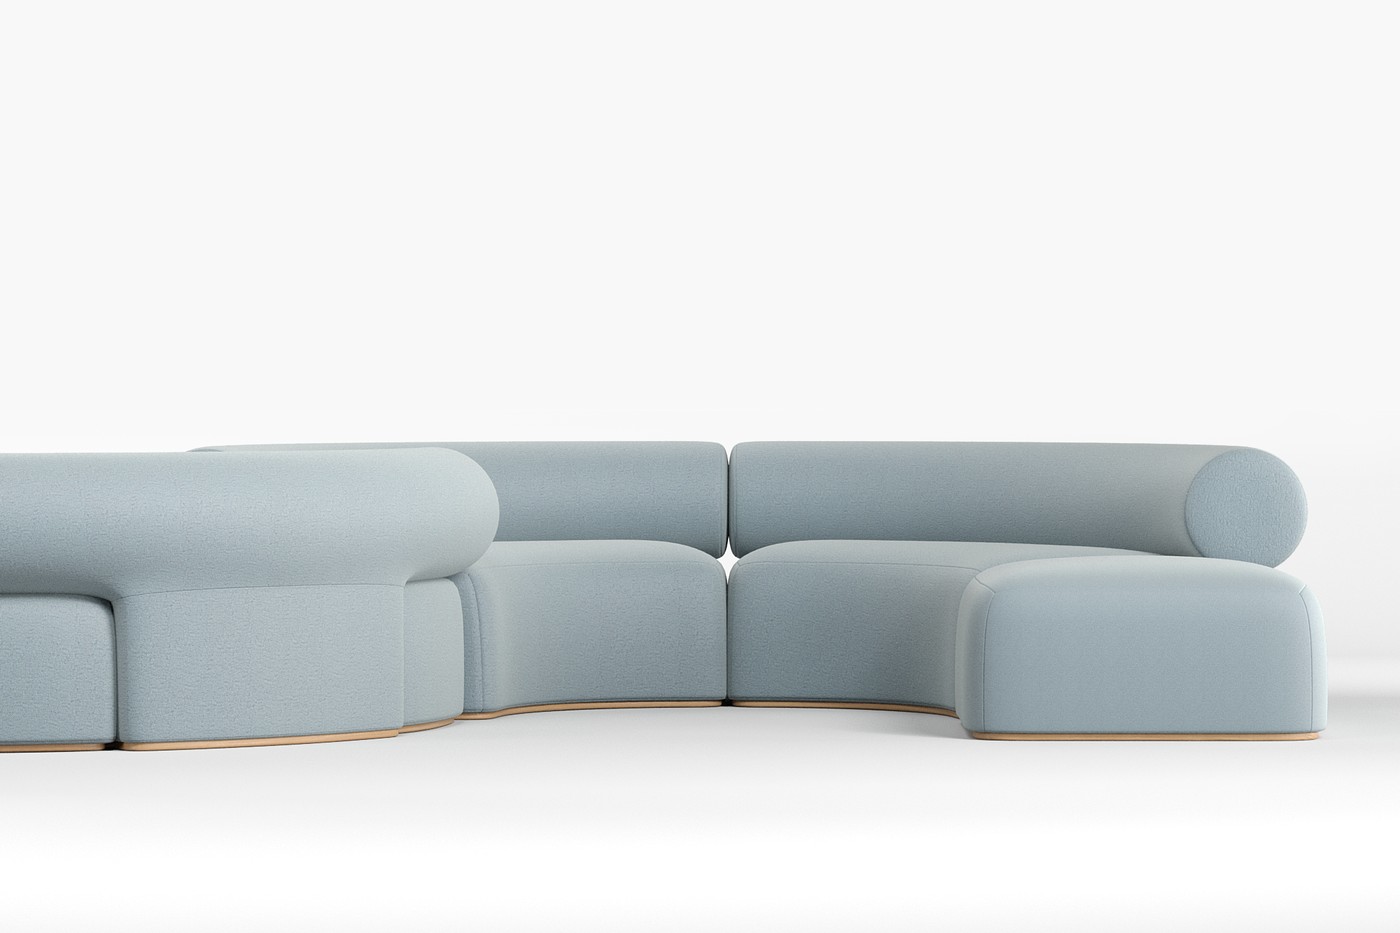 Troféu Ouro da categoria "Design com traços contemporâneos": sofá Raupe, criado pela designer Vanessa Martins. Produzido pela Indústria Asa Estofados